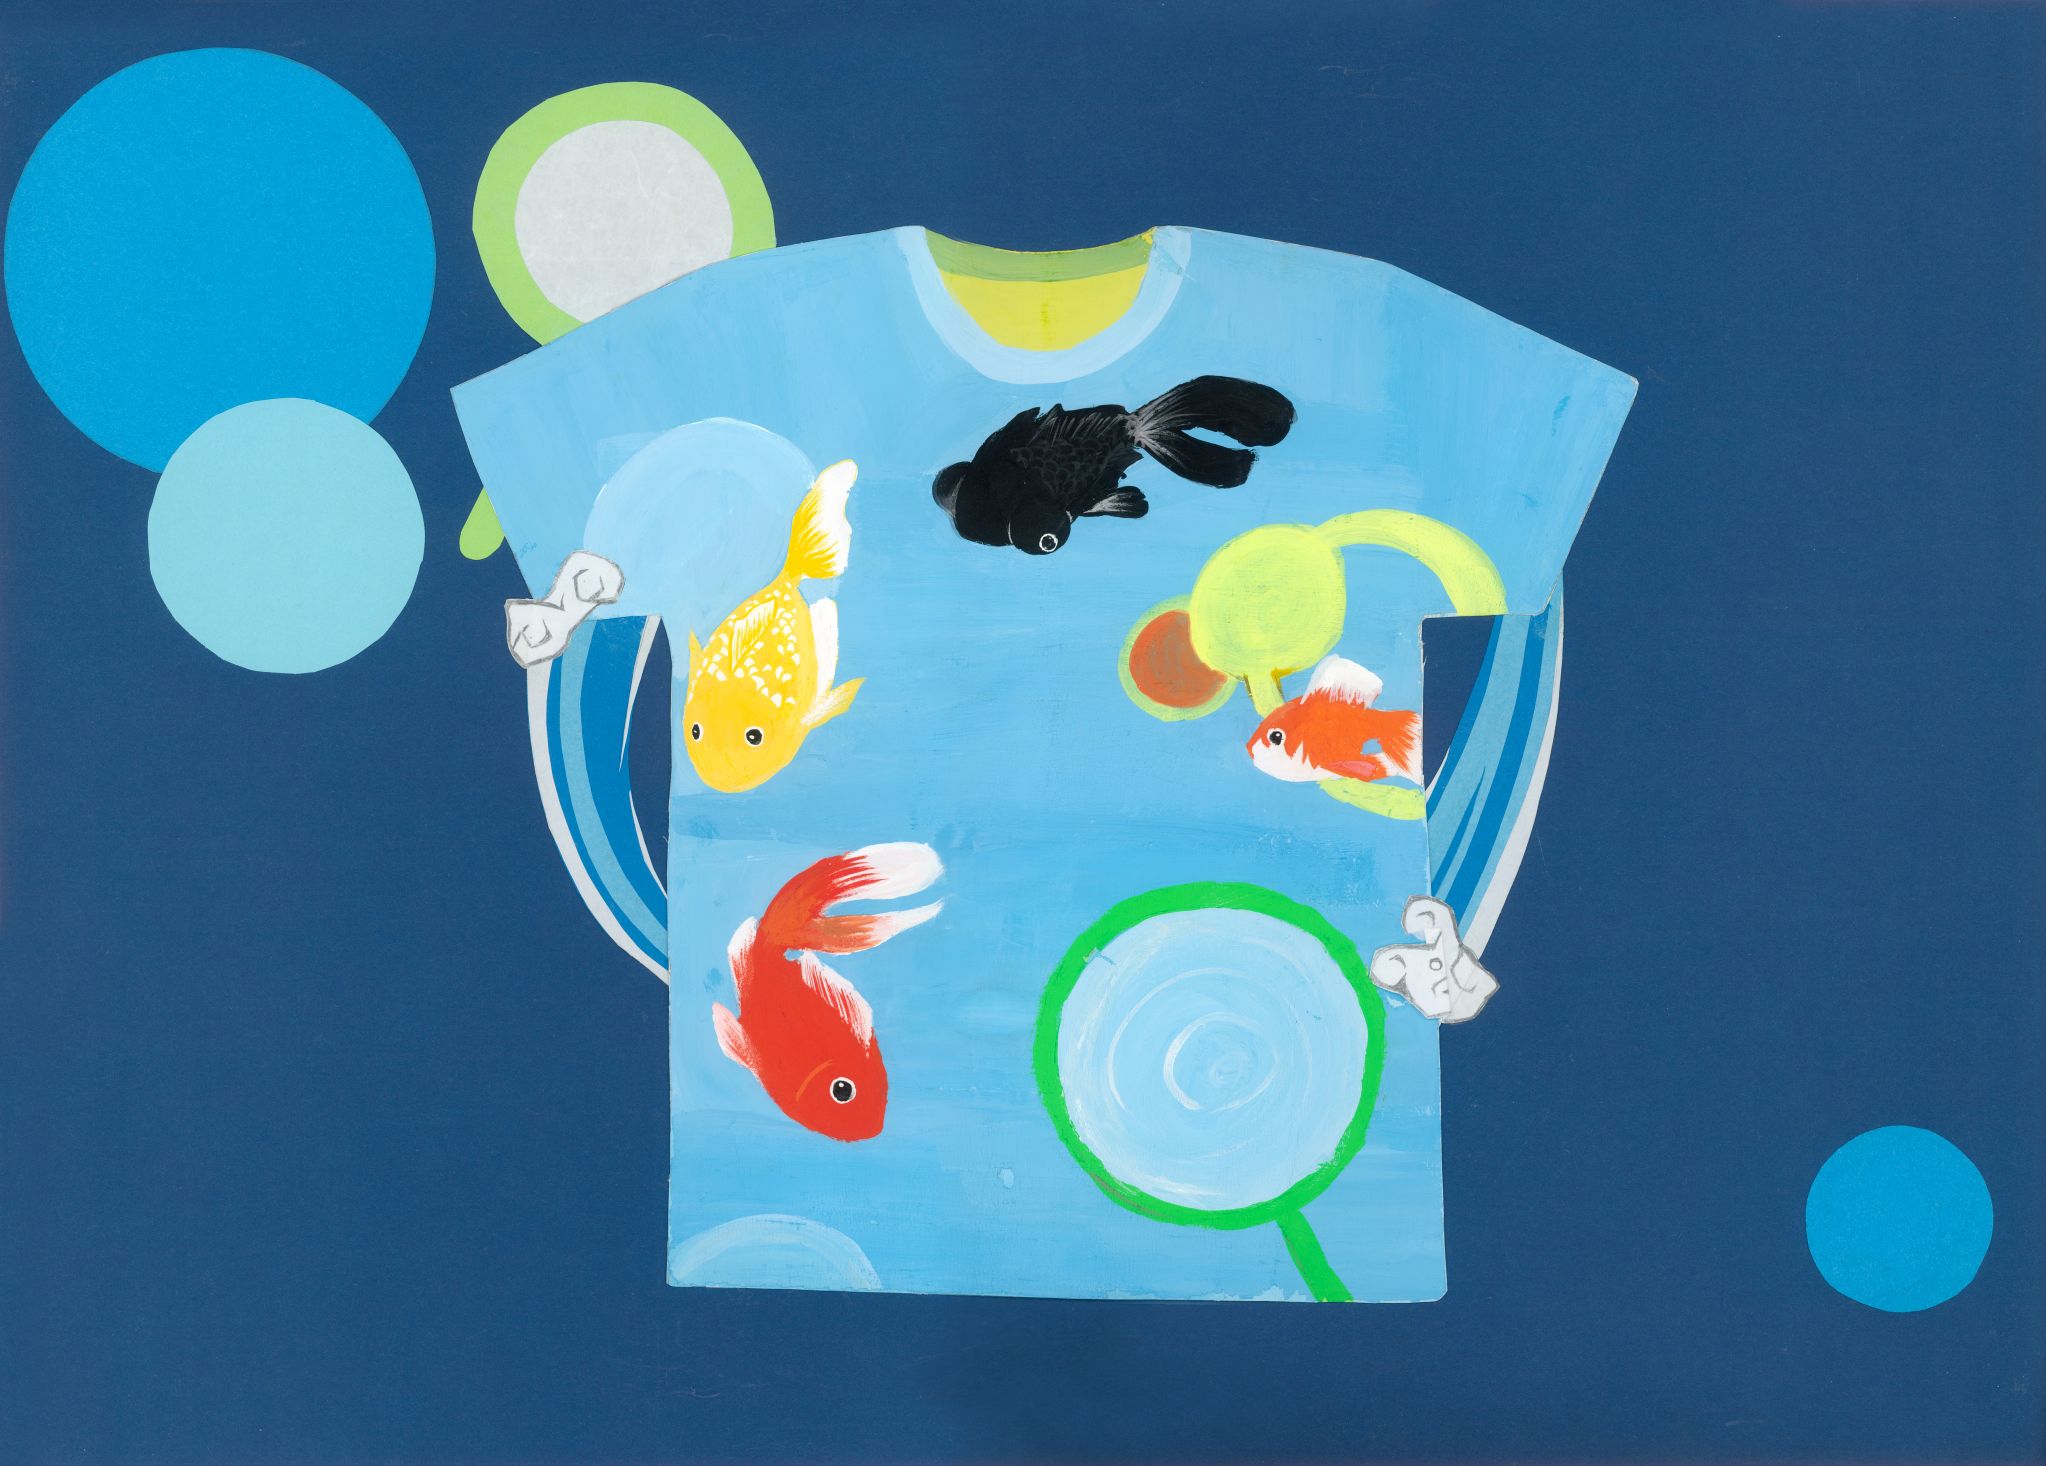 Student artwork – Swirling goldfish